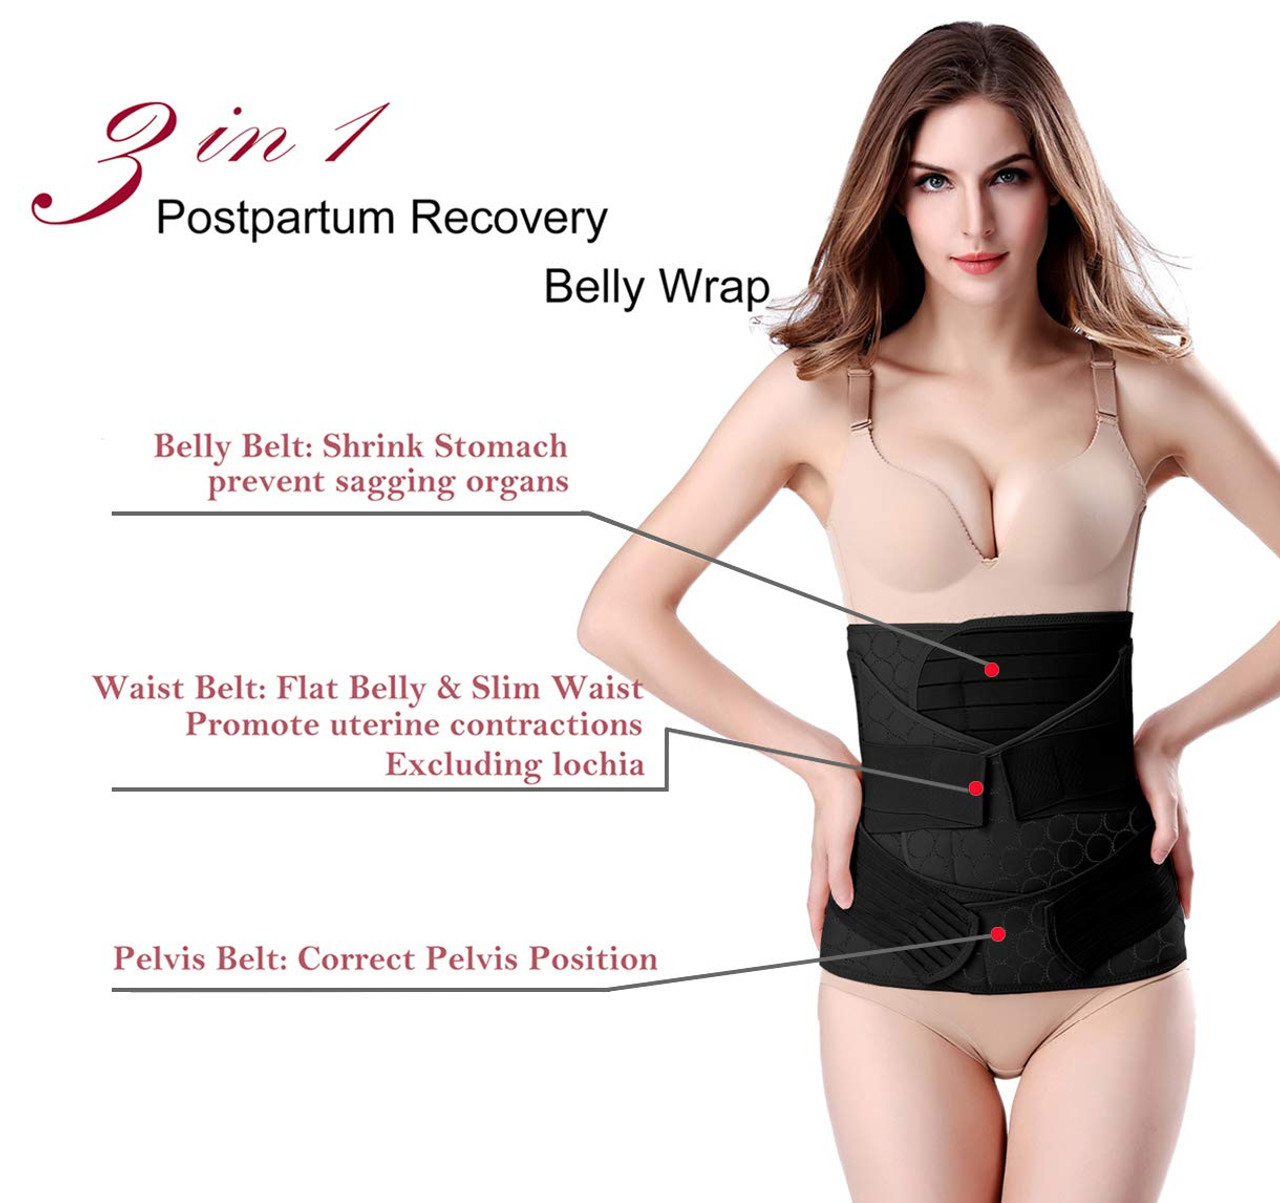 3 in 1 Postpartum Belly Wrap - Recovery Belly/Waist/Pelvis Belt